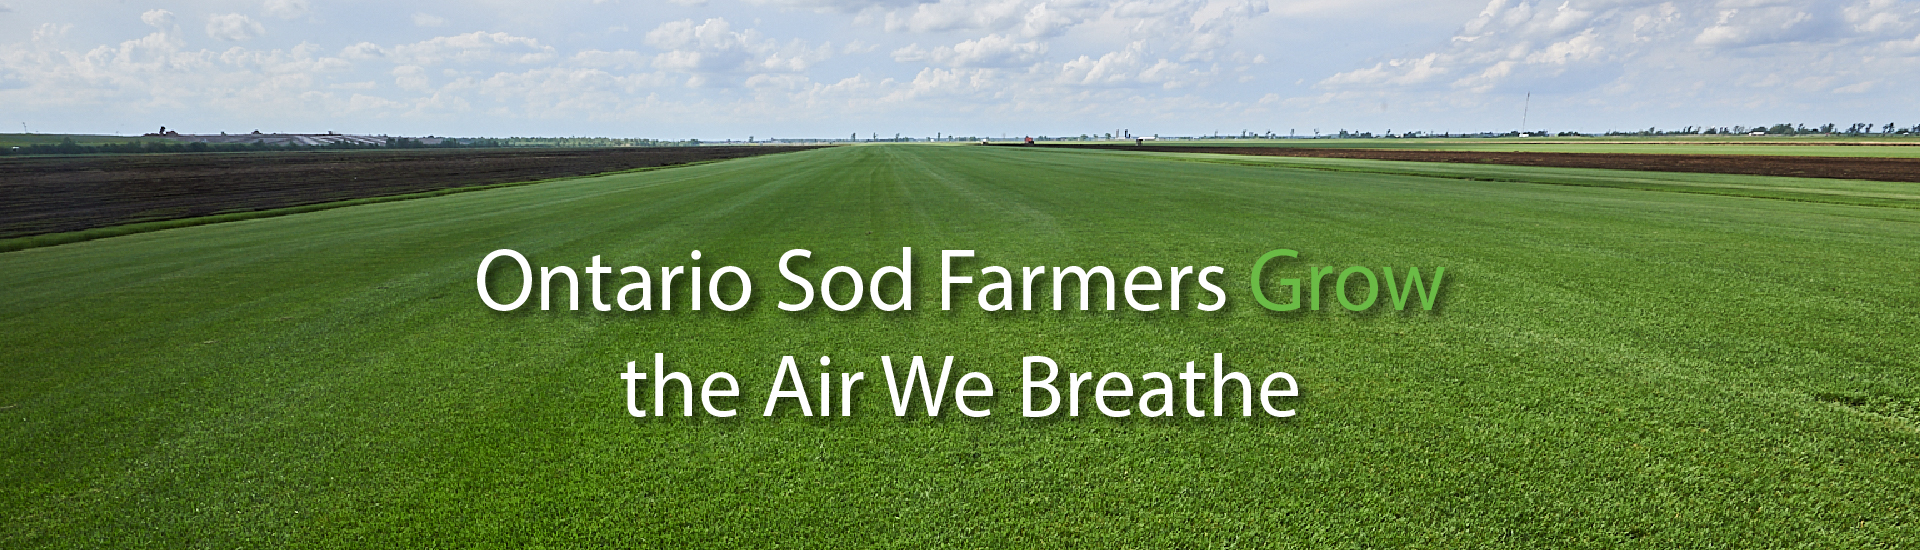 Ontario Sod Farmers Grow the Air We Breathe